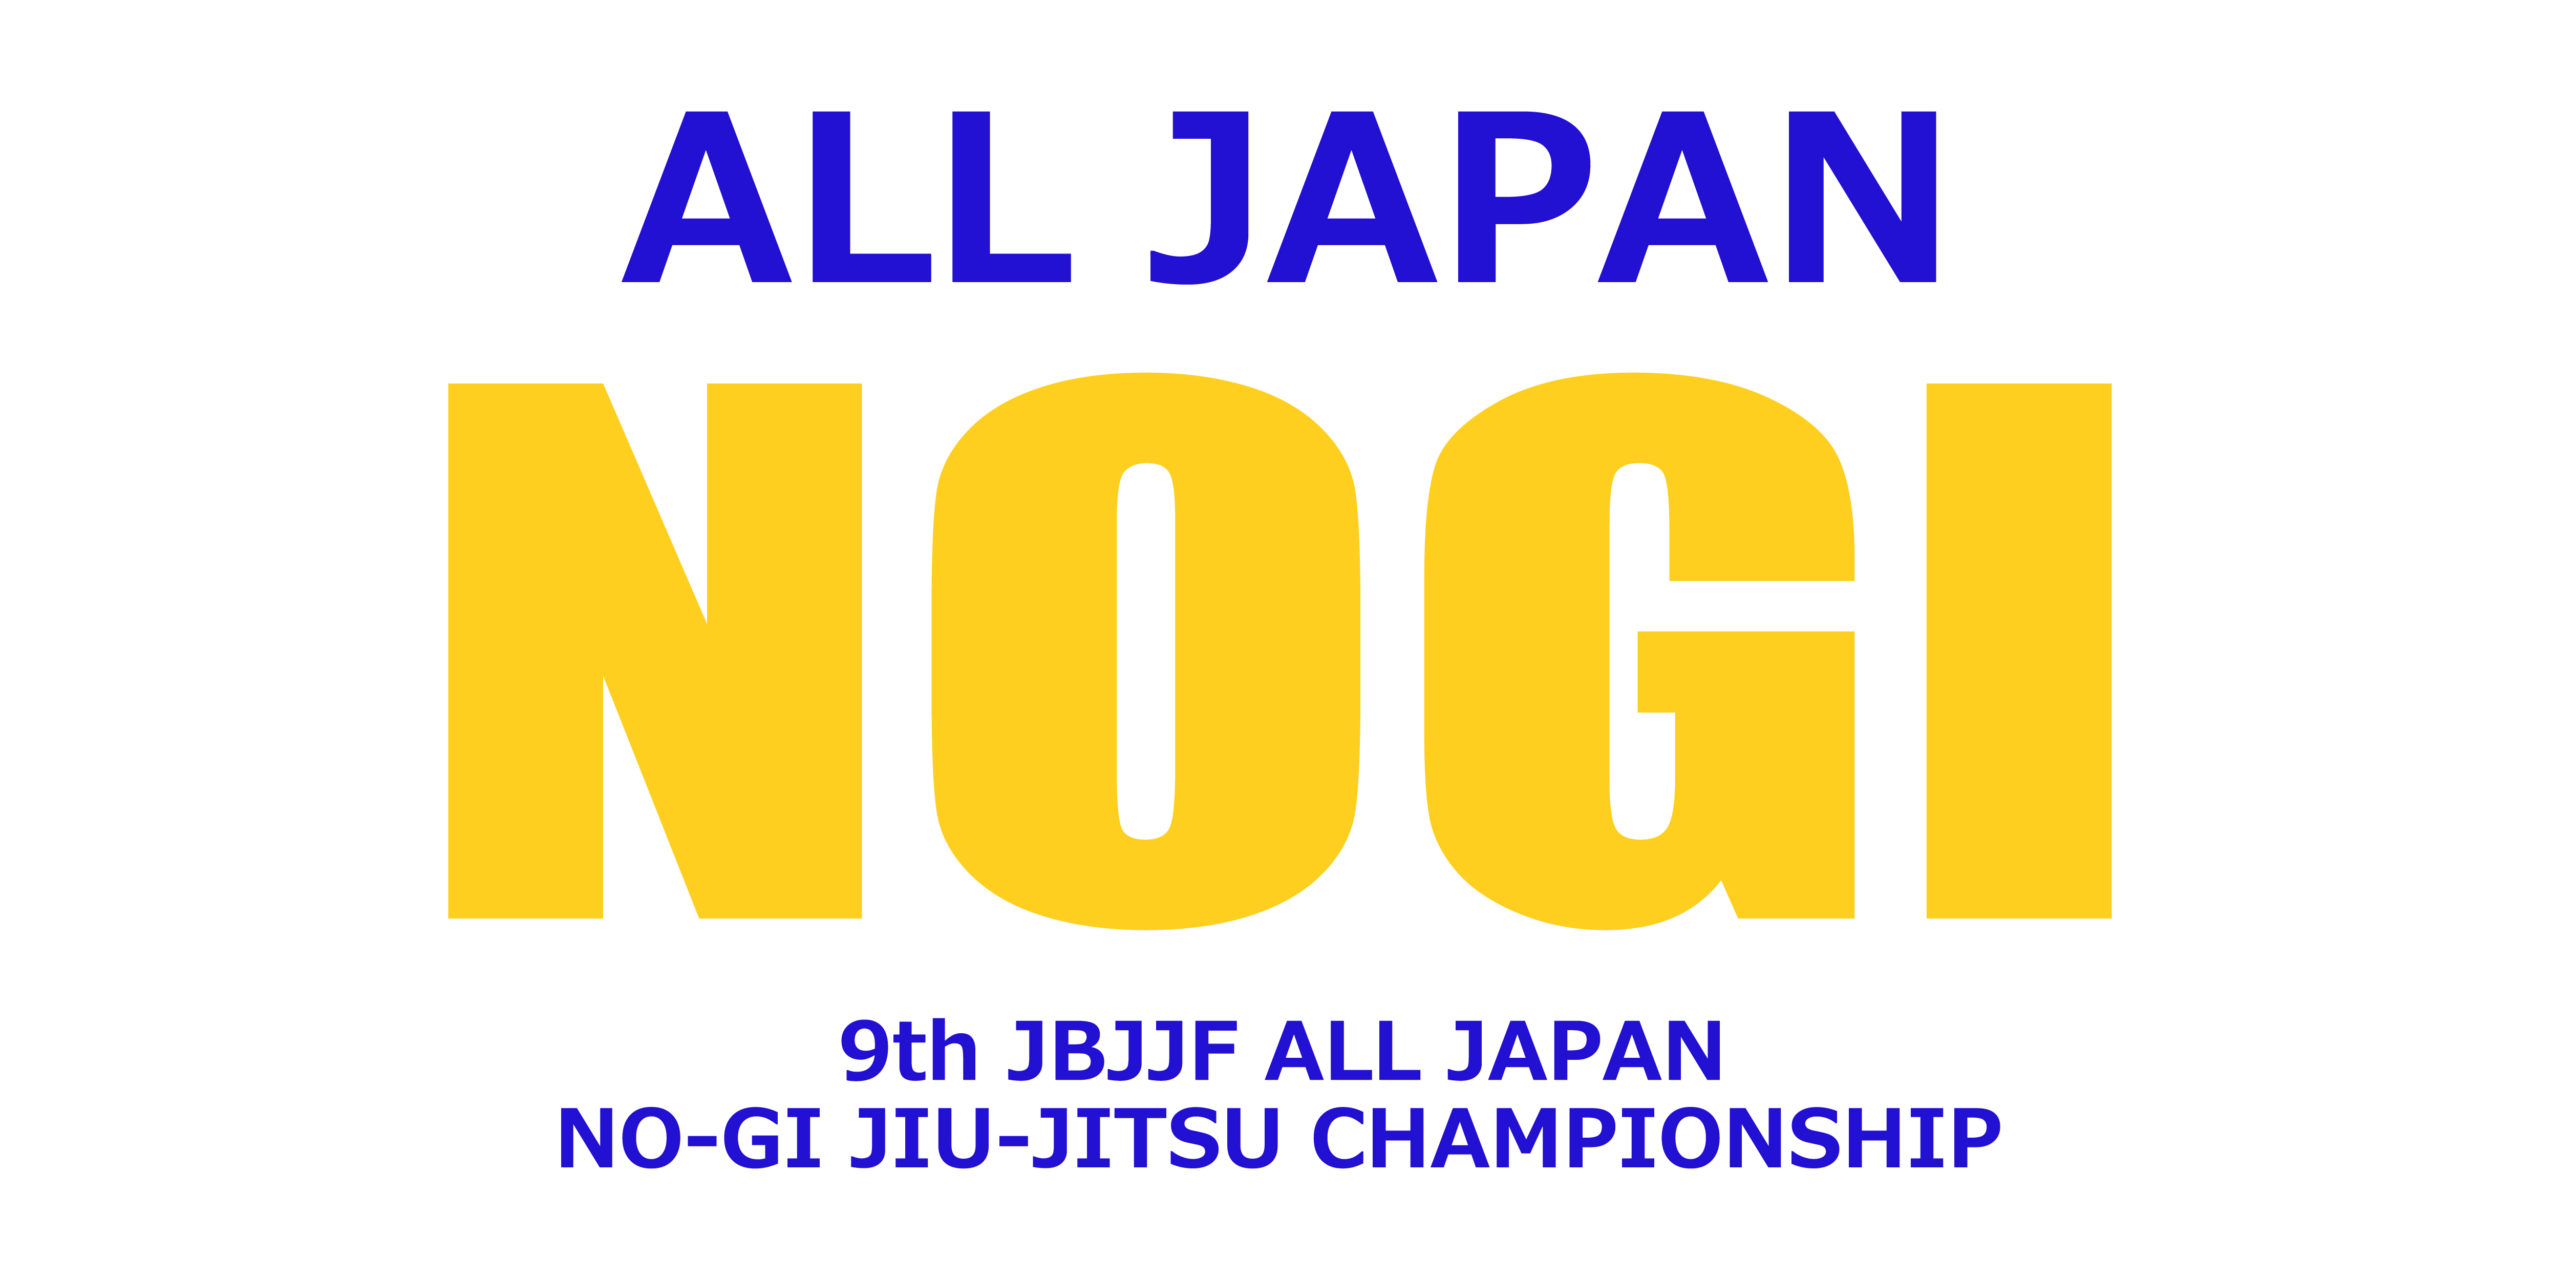 第9回全日本ノーギ柔術選手権9th ALL JAPAN NO-GI JU-JITSU 